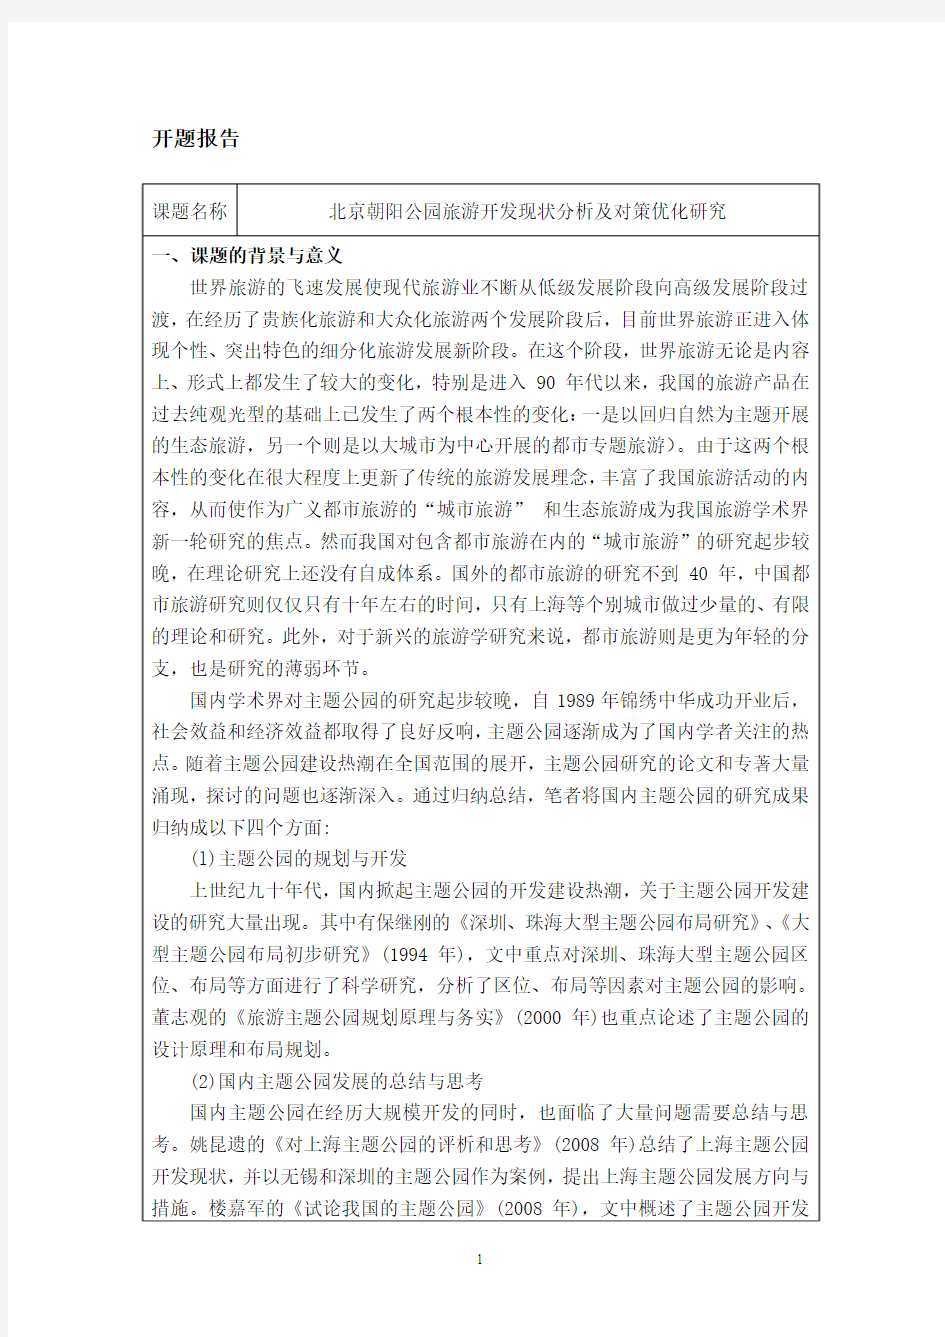 25-5-开题报告-北京朝阳公园旅游开发现状分析及对策优化研究